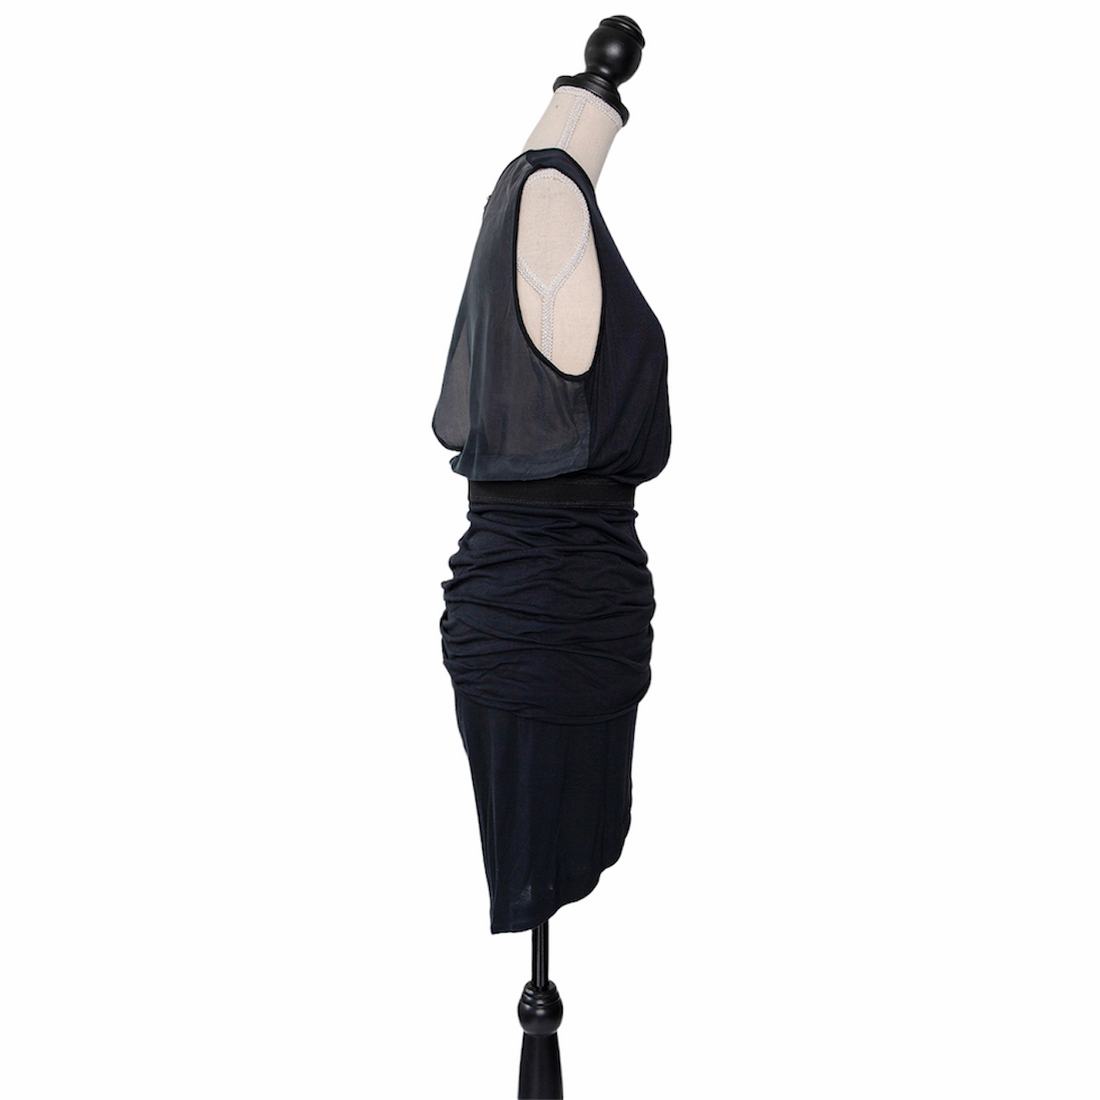 By Malene Birger Kleid mit transparentem Rücken